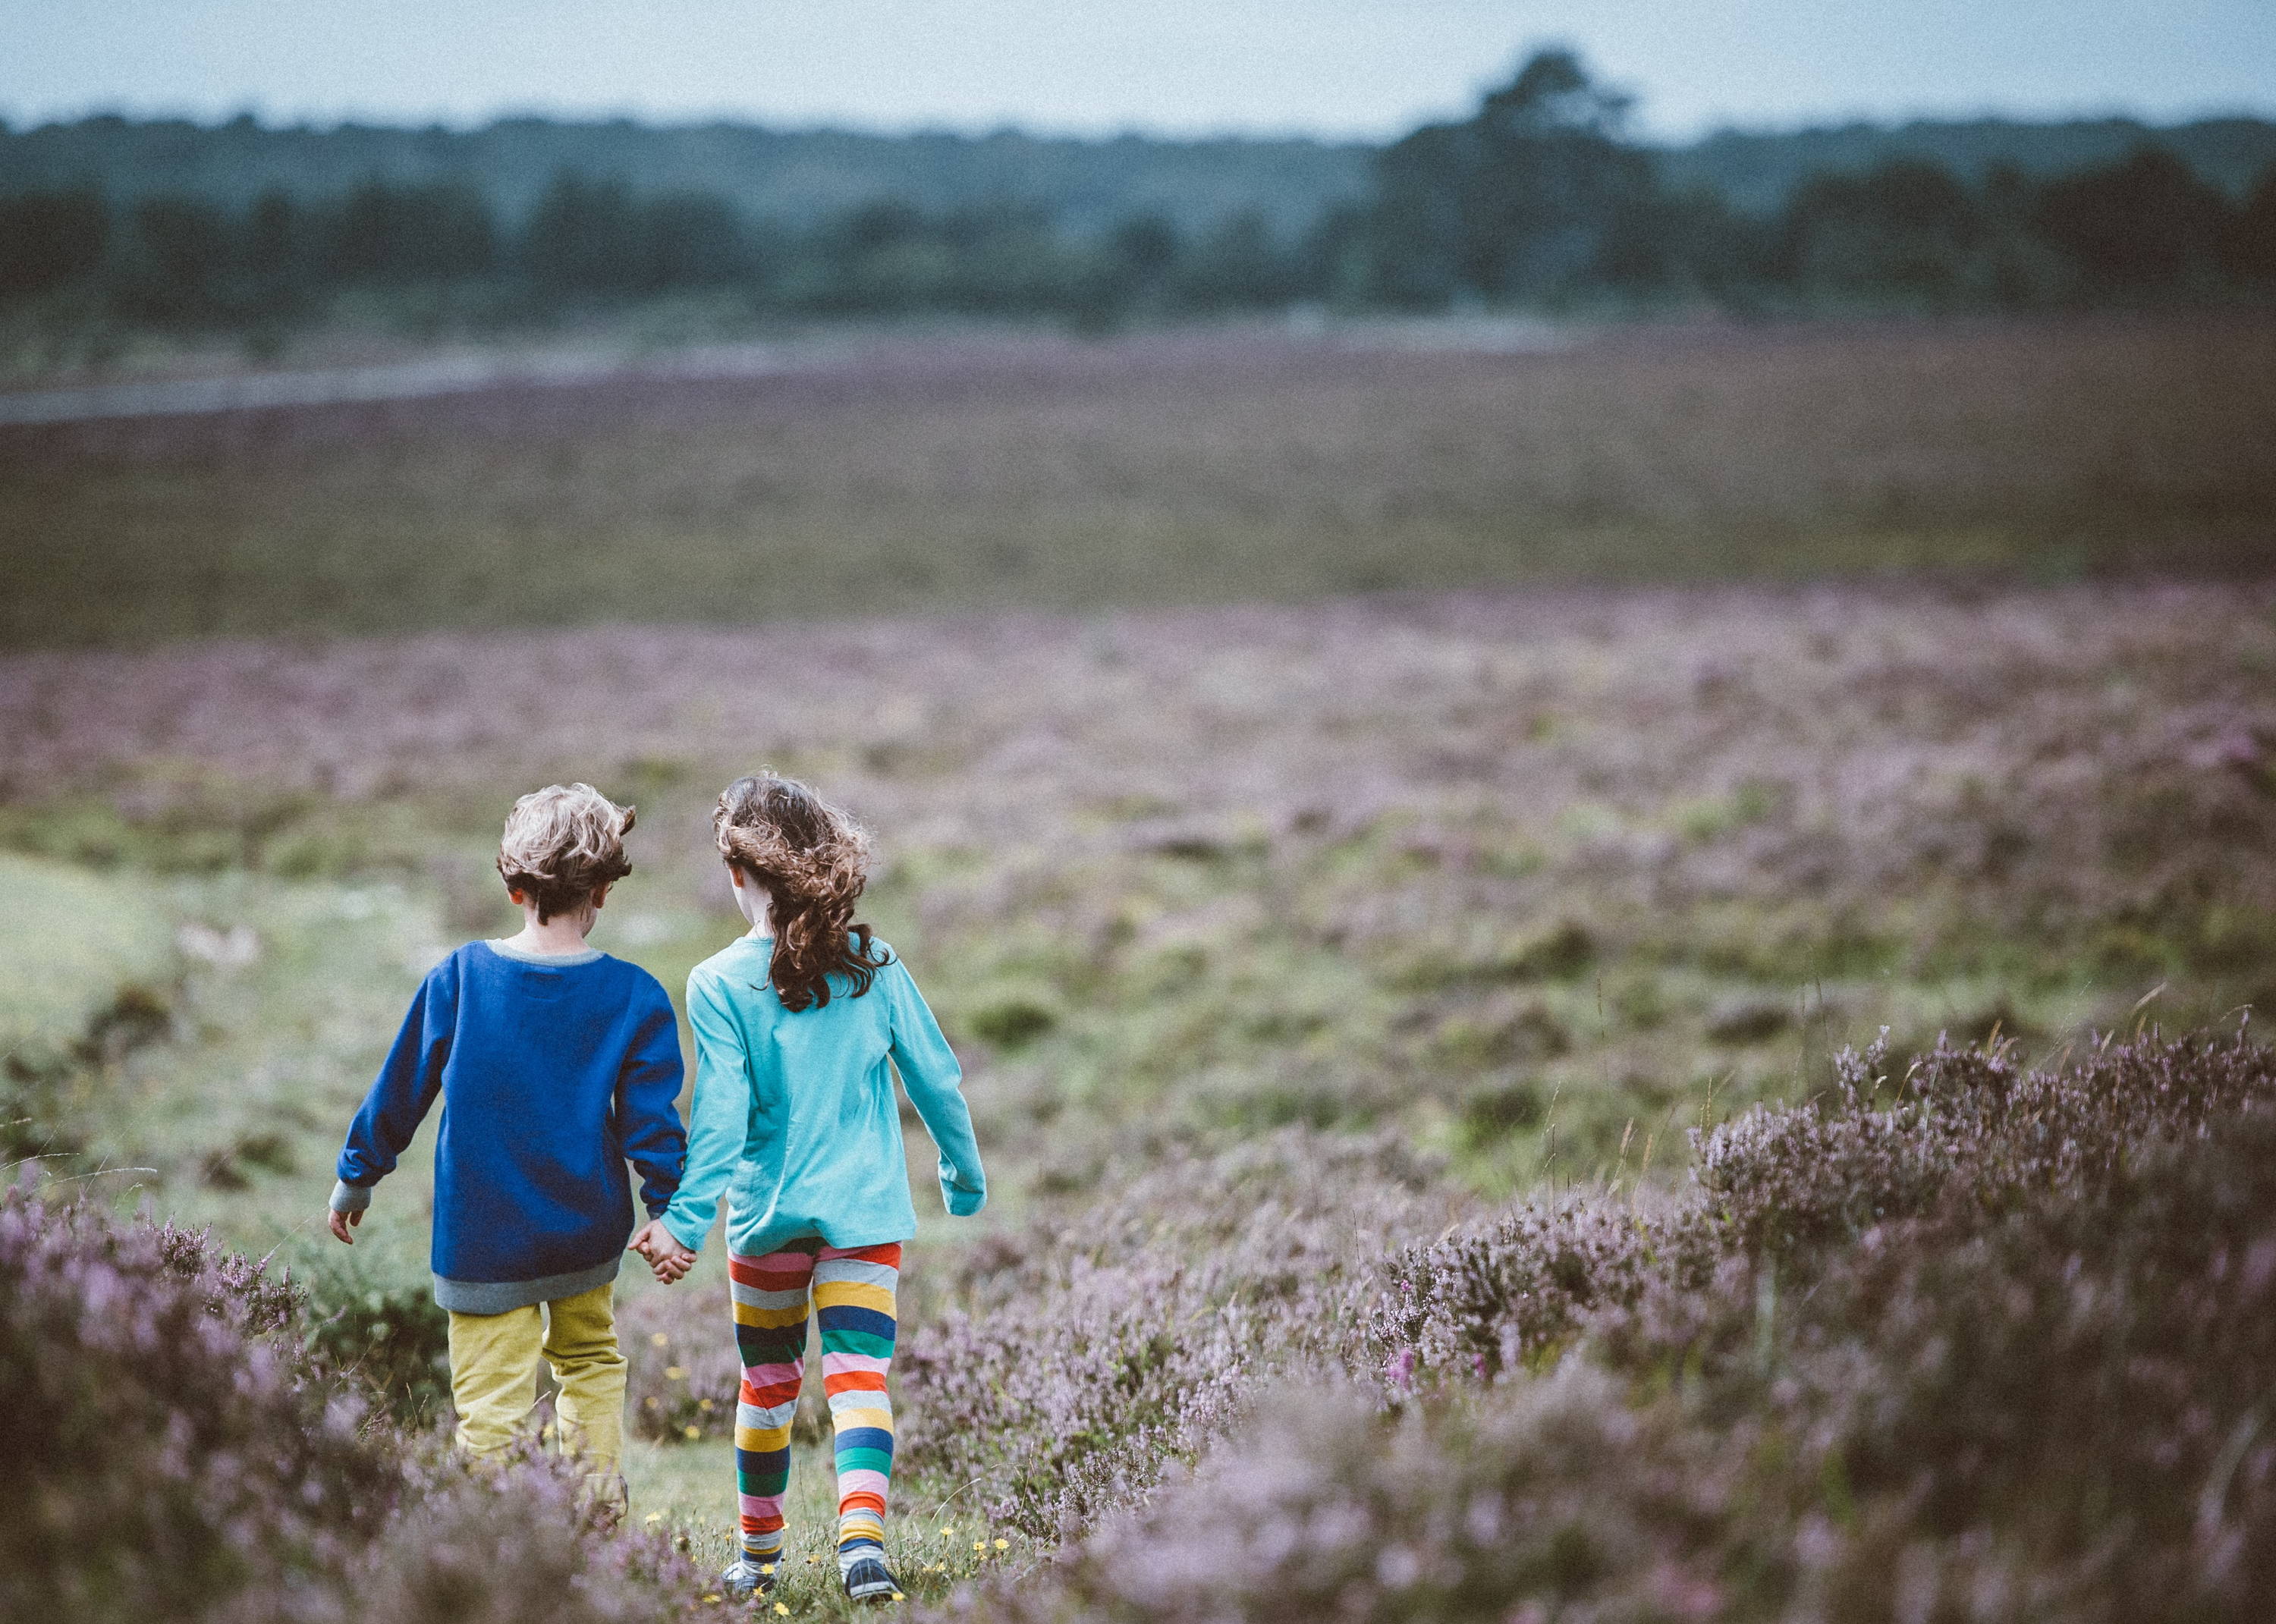 Twee kinderen, een meisje en jongen, lopen hand in hand langs over de hei. Het ziet eruit alsof ze op avontuur zijn.